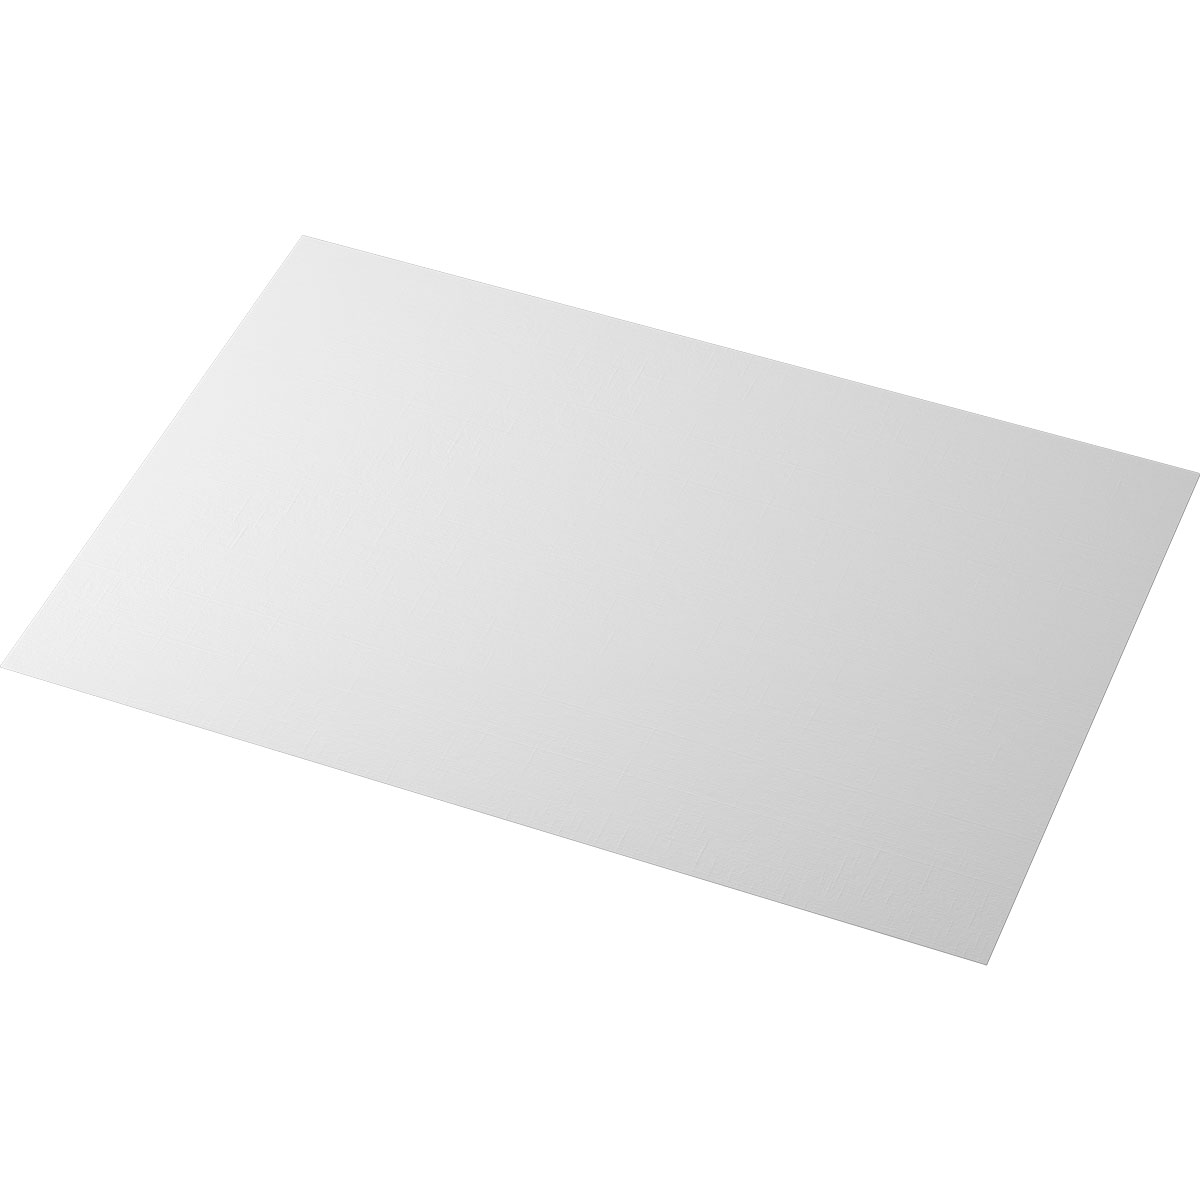 Duni Evolin-Tischsets 30 x 43,5 cm weiß